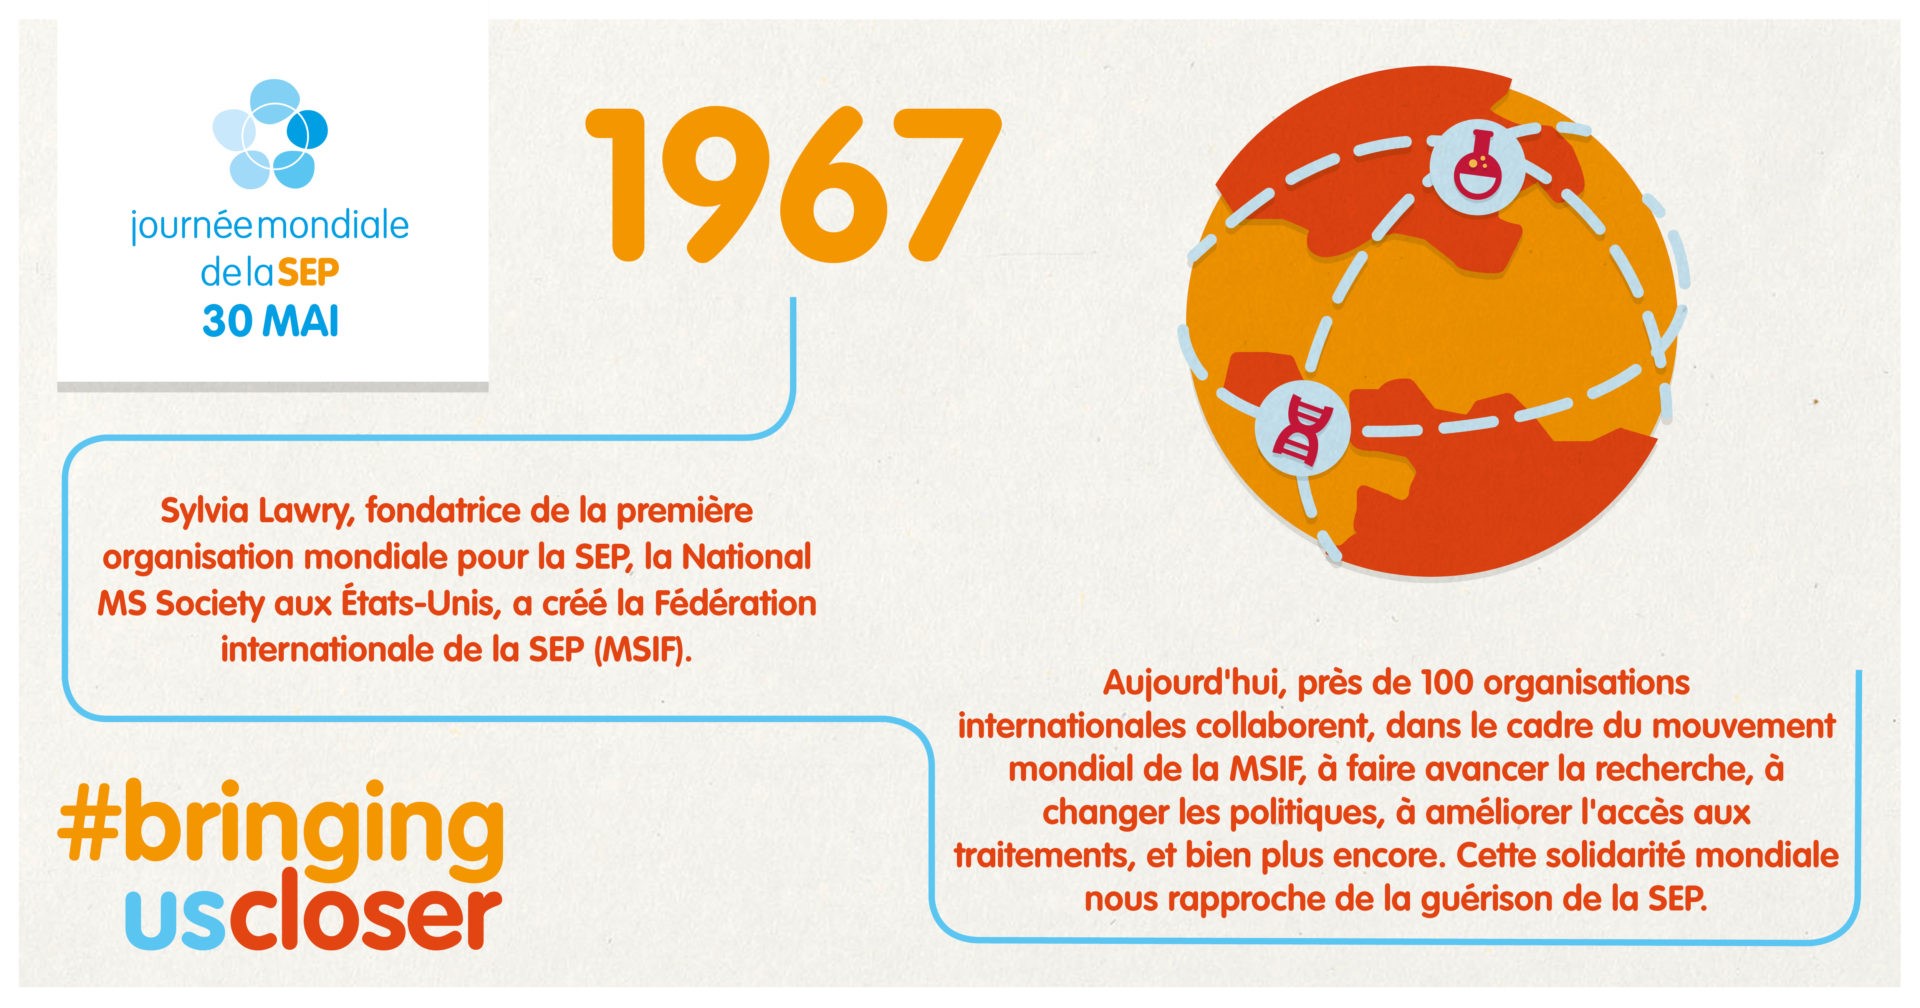 1967 Sylvia Lawry, fondatrice de la première organisation mondiale de la SEP, crée la Fédération internationale de la SEP